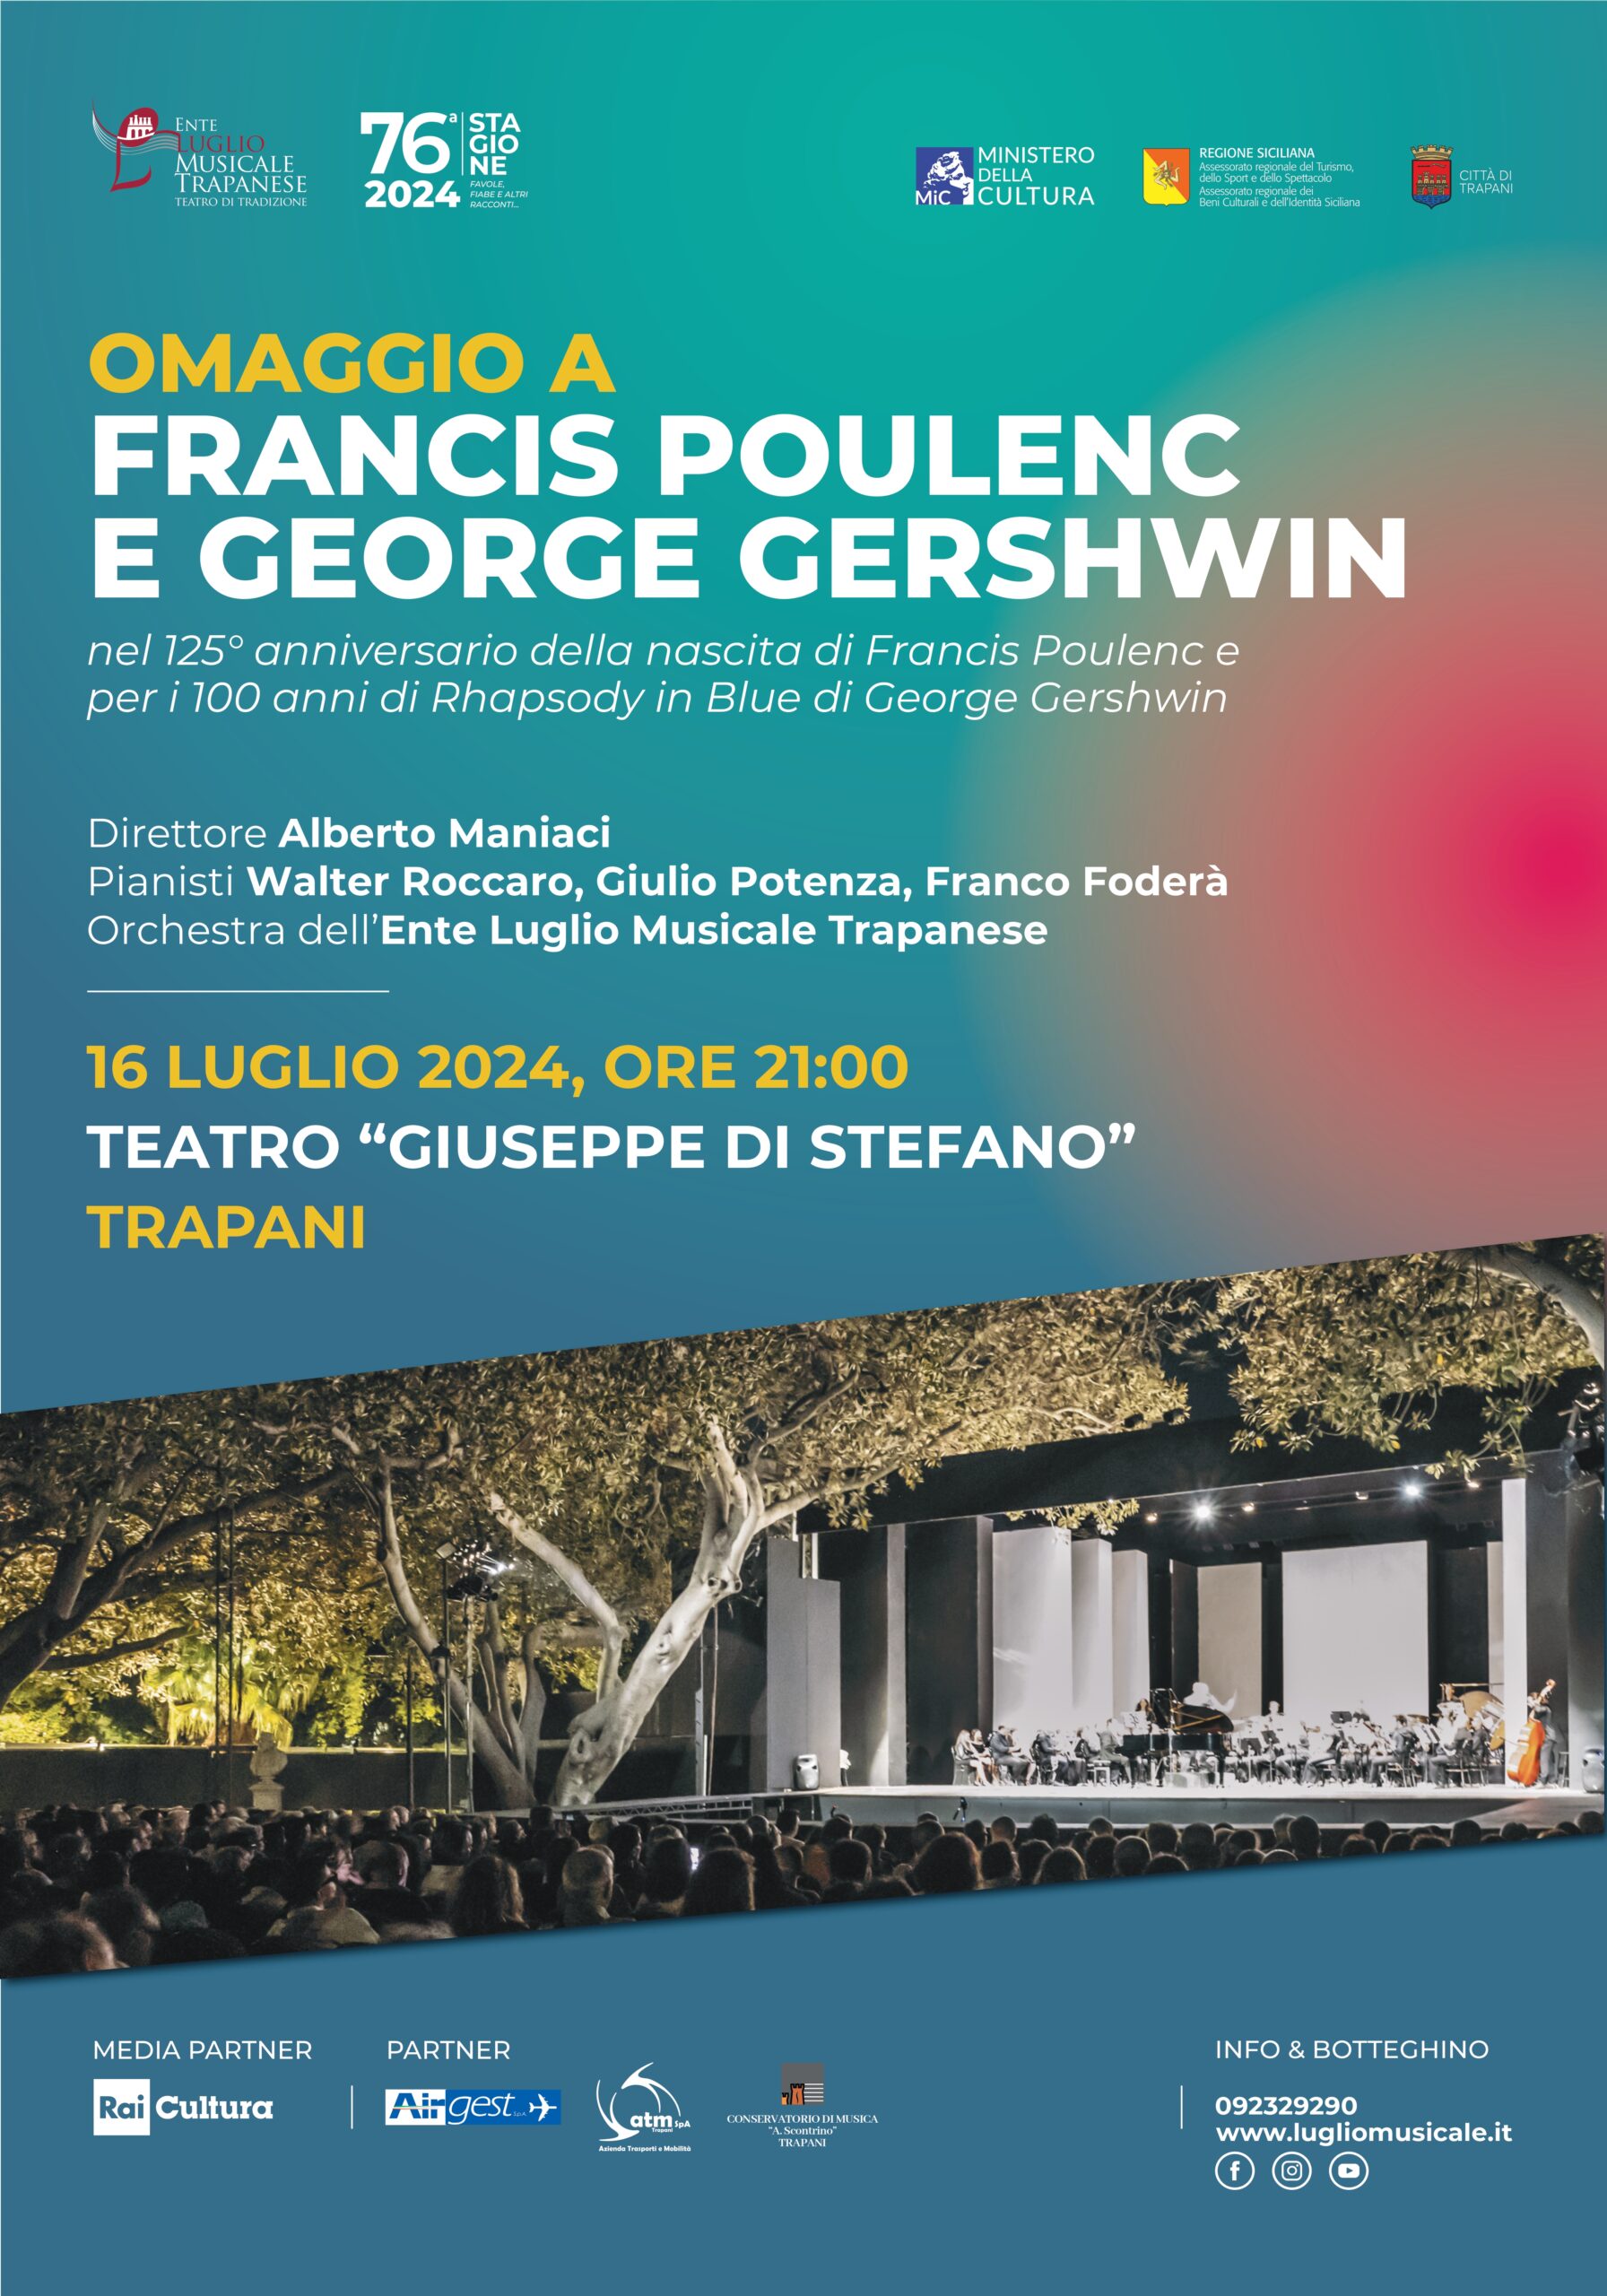 Al Teatro “Di Stefano” di Trapani concerto omaggio a Poulenc Gershwin tra favole e racconti